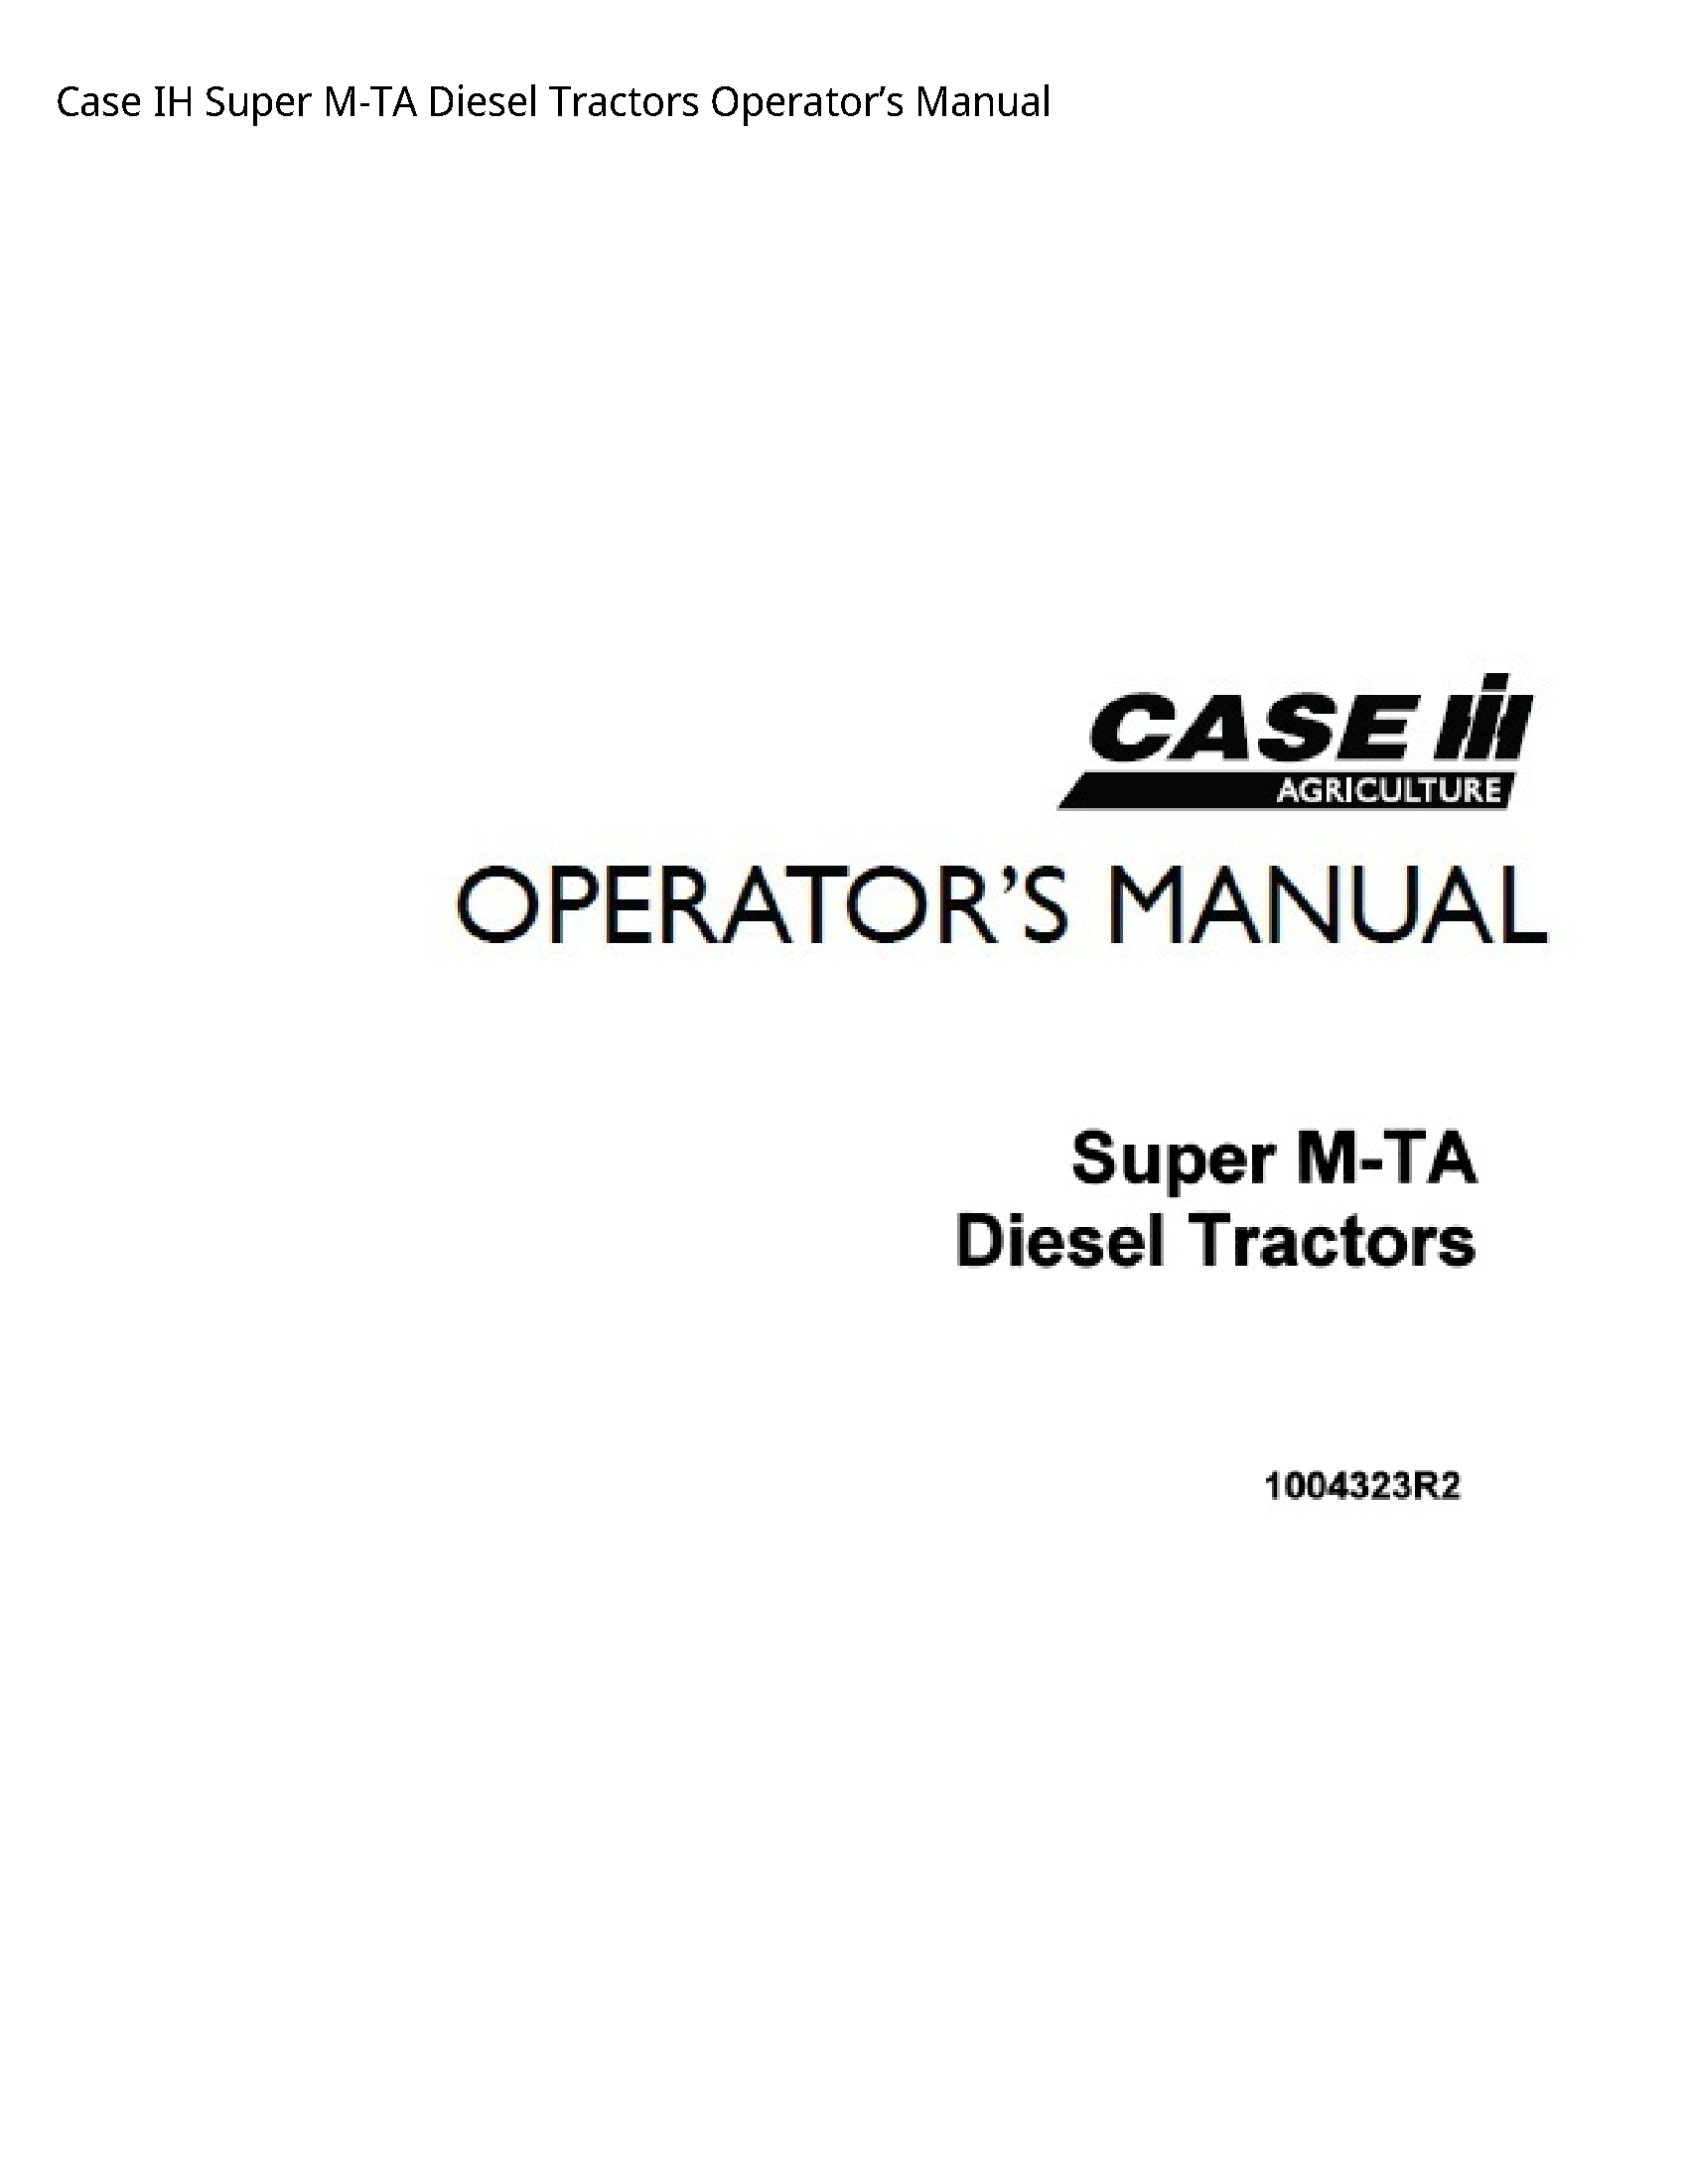 Case/Case IH IH Super M-TA Diesel Tractors Operator’s manual